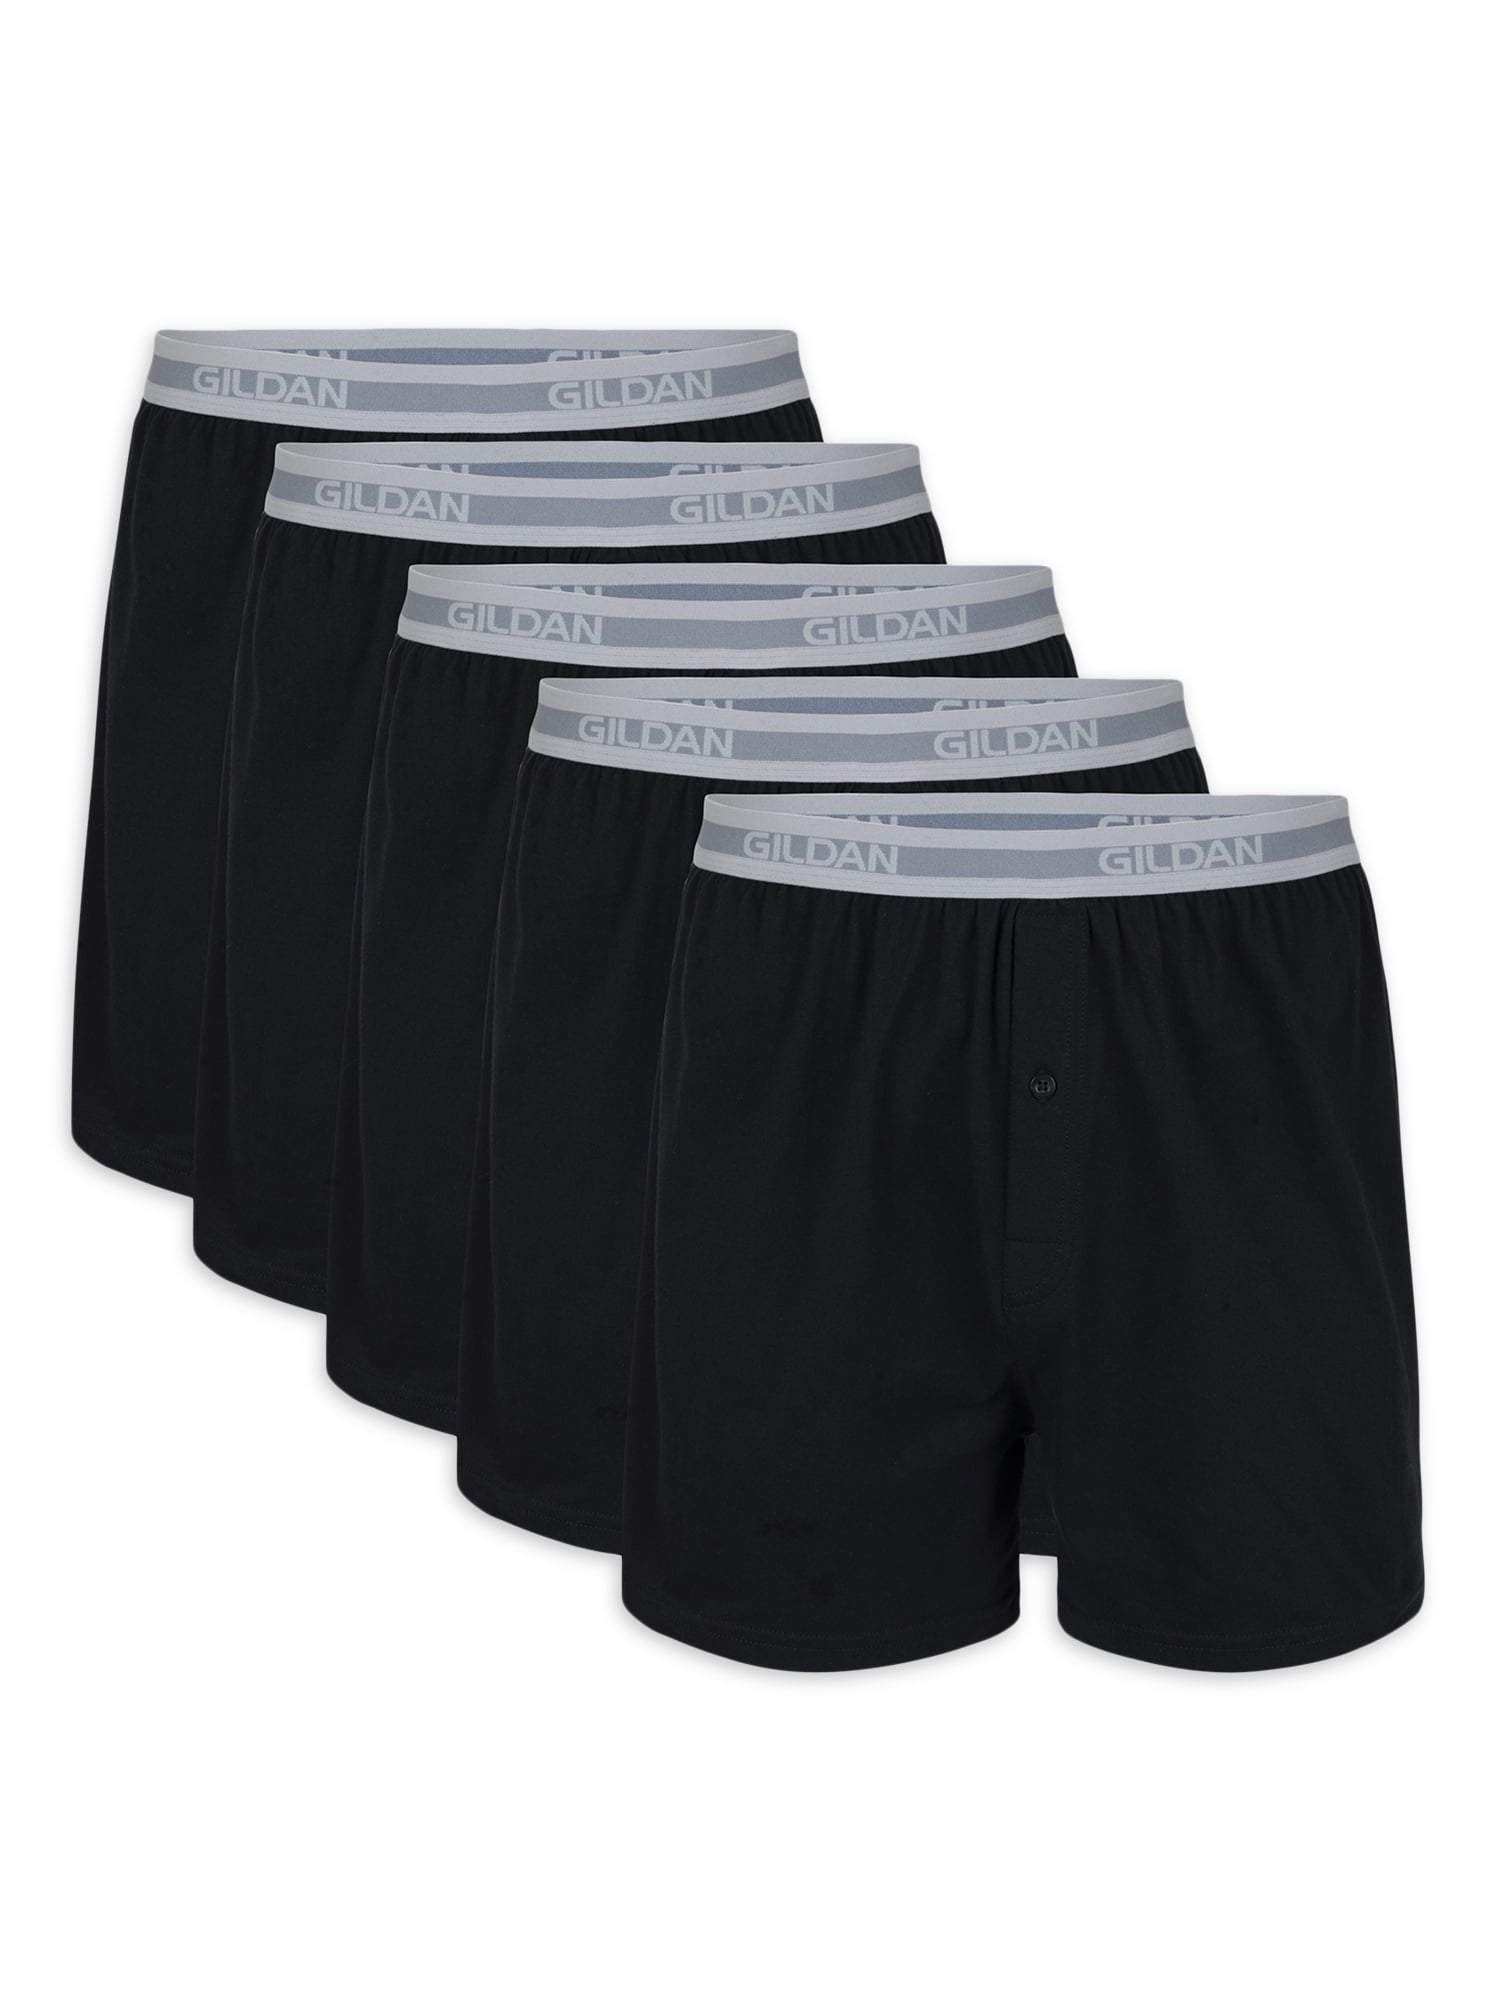 Gildan Adult Men's Knit Boxers, 5-Pack, Sizes S-2XL, 4 Inseam